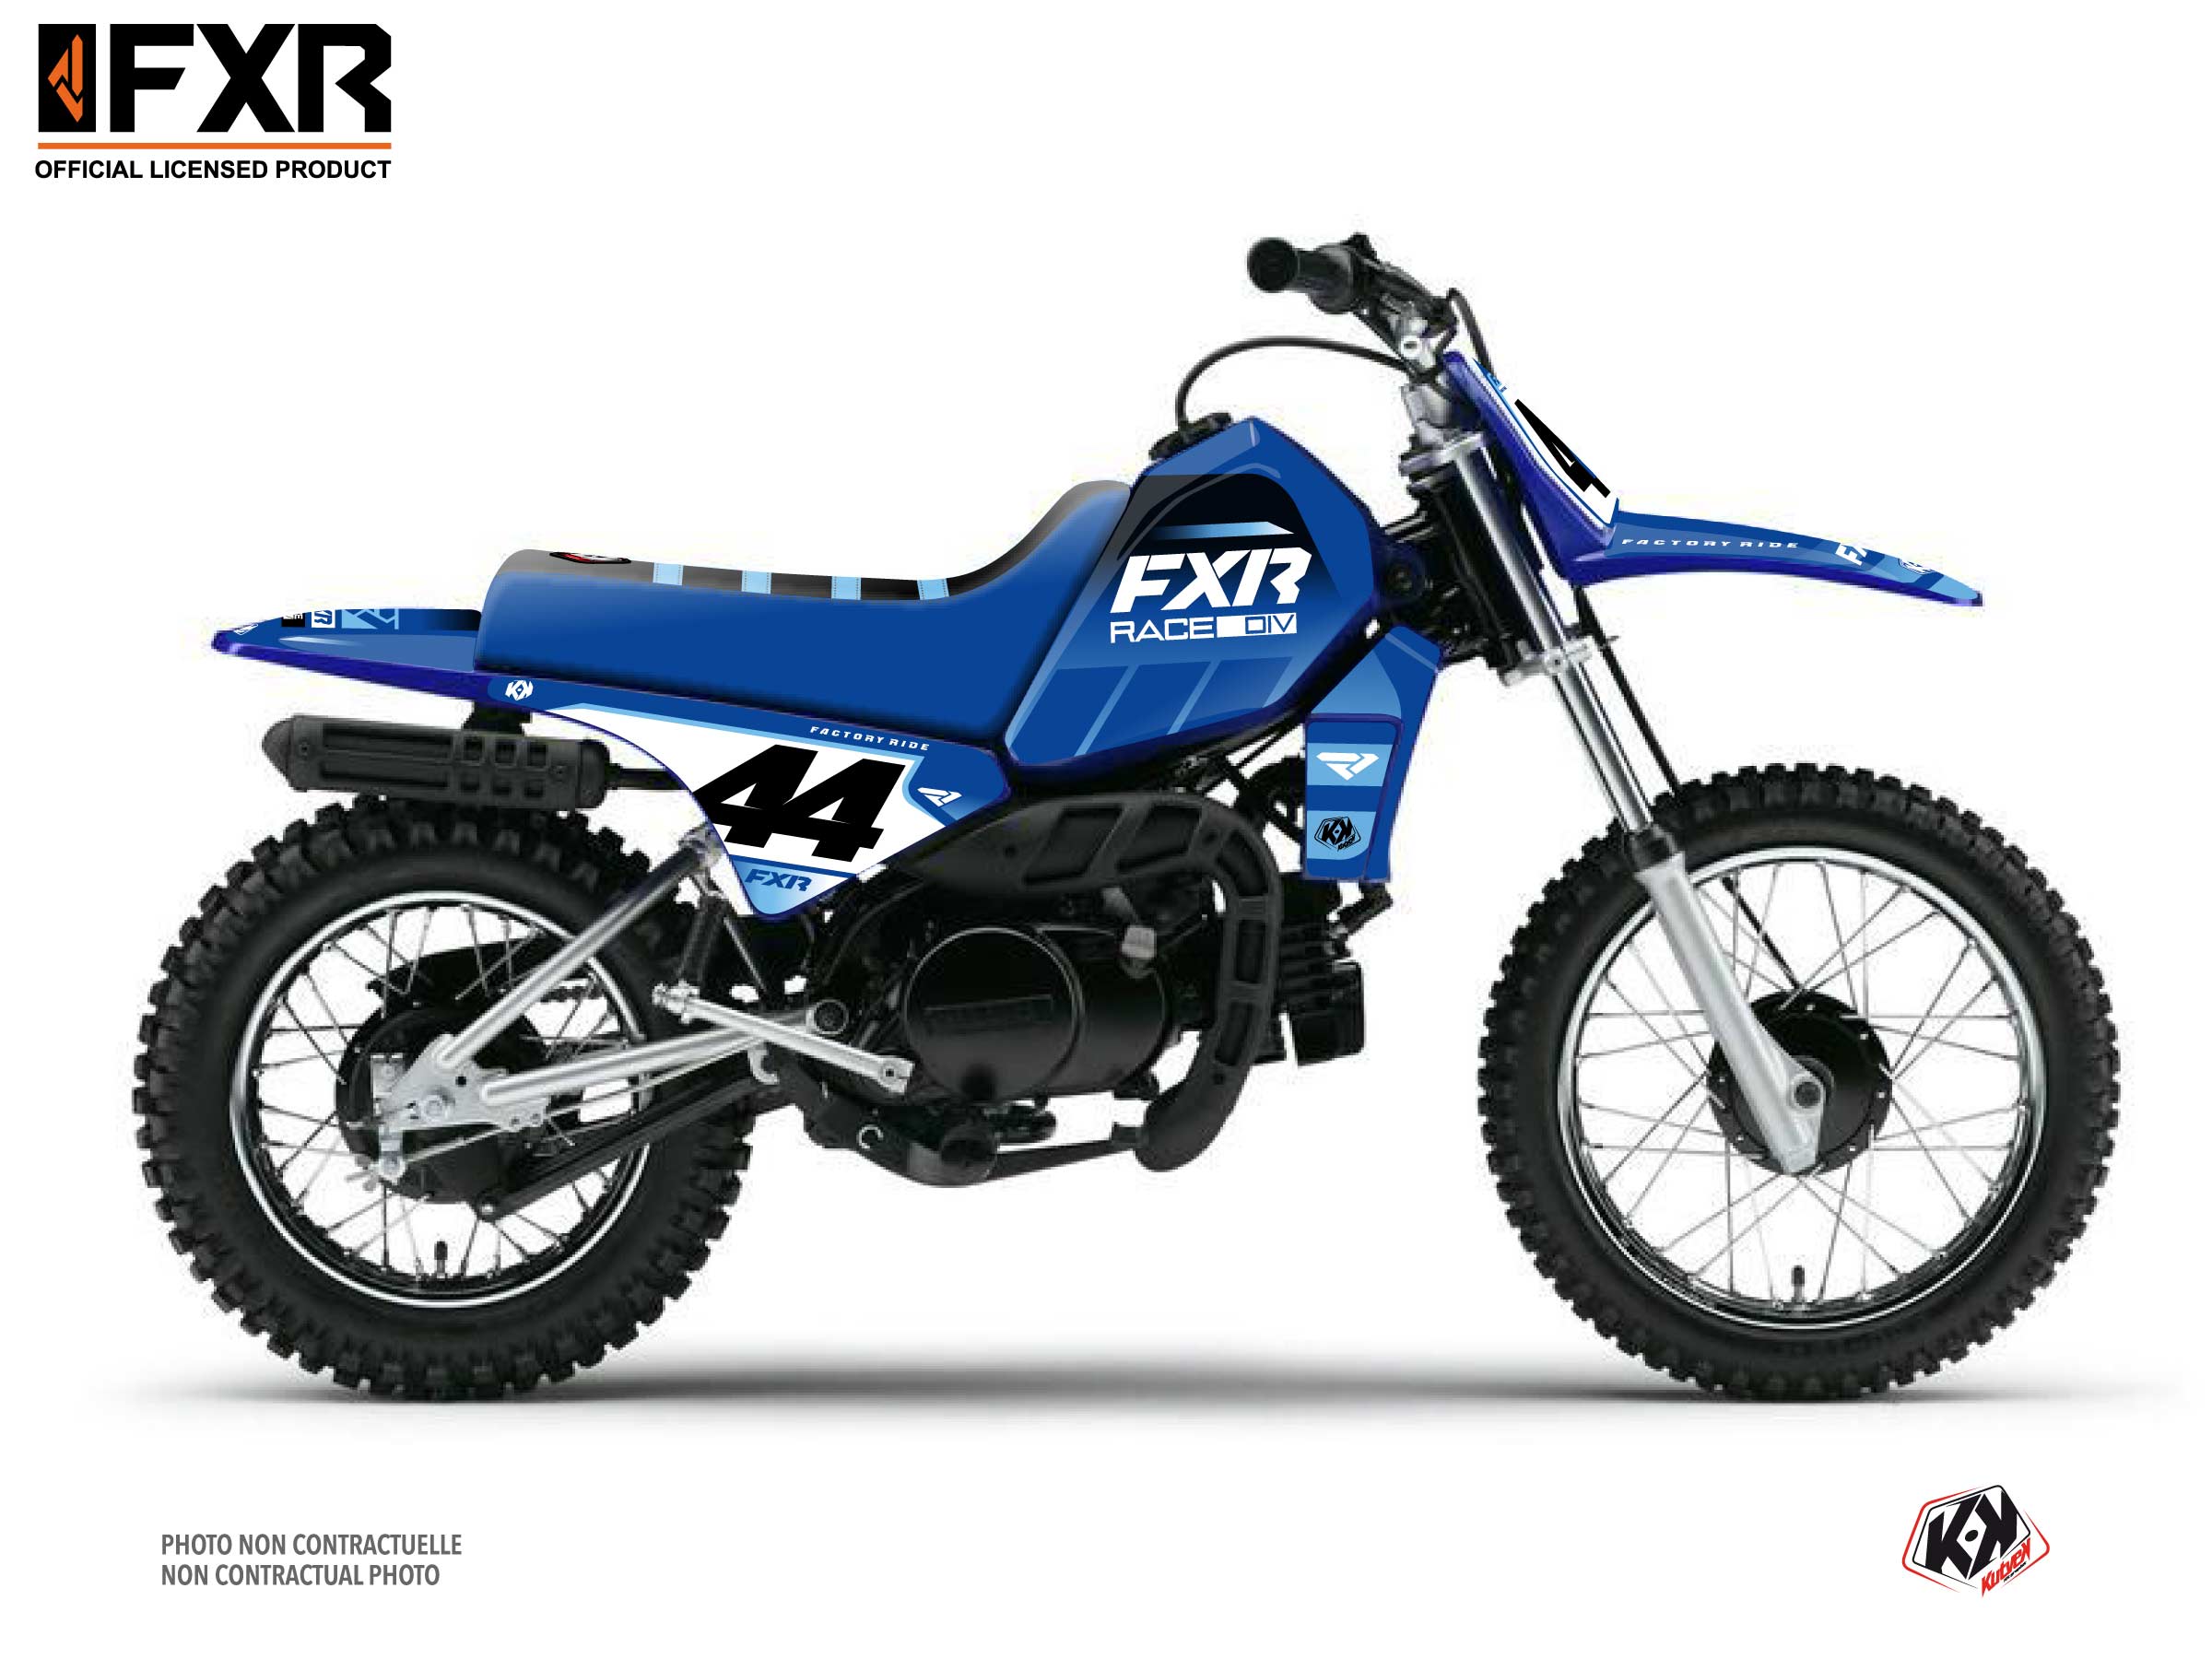 Yamaha Pw 80 Dirt Bike Fxr Revo Graphic Kit Blue